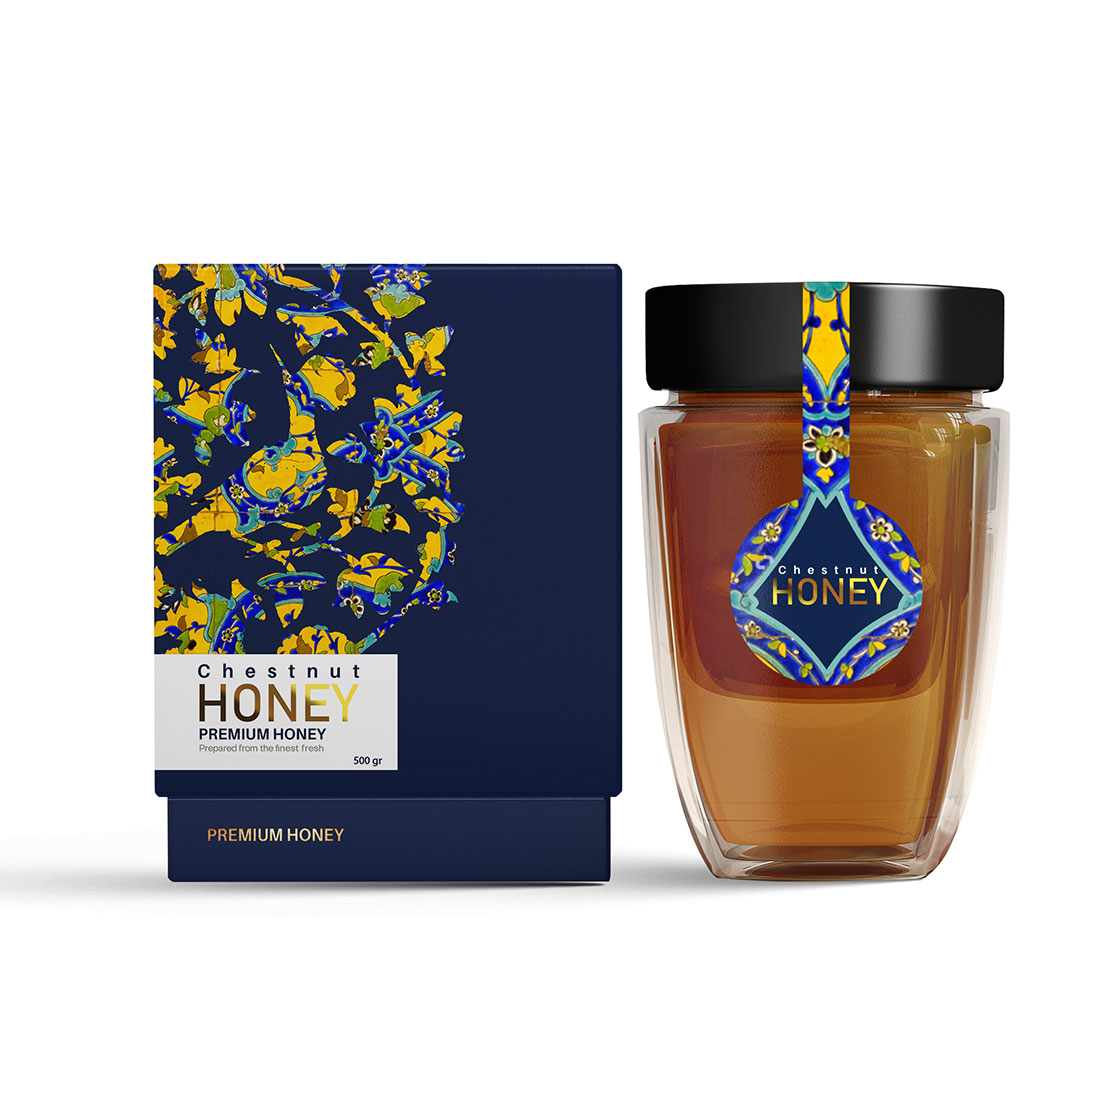 一个强大的象征性的蜂蜜包装设计